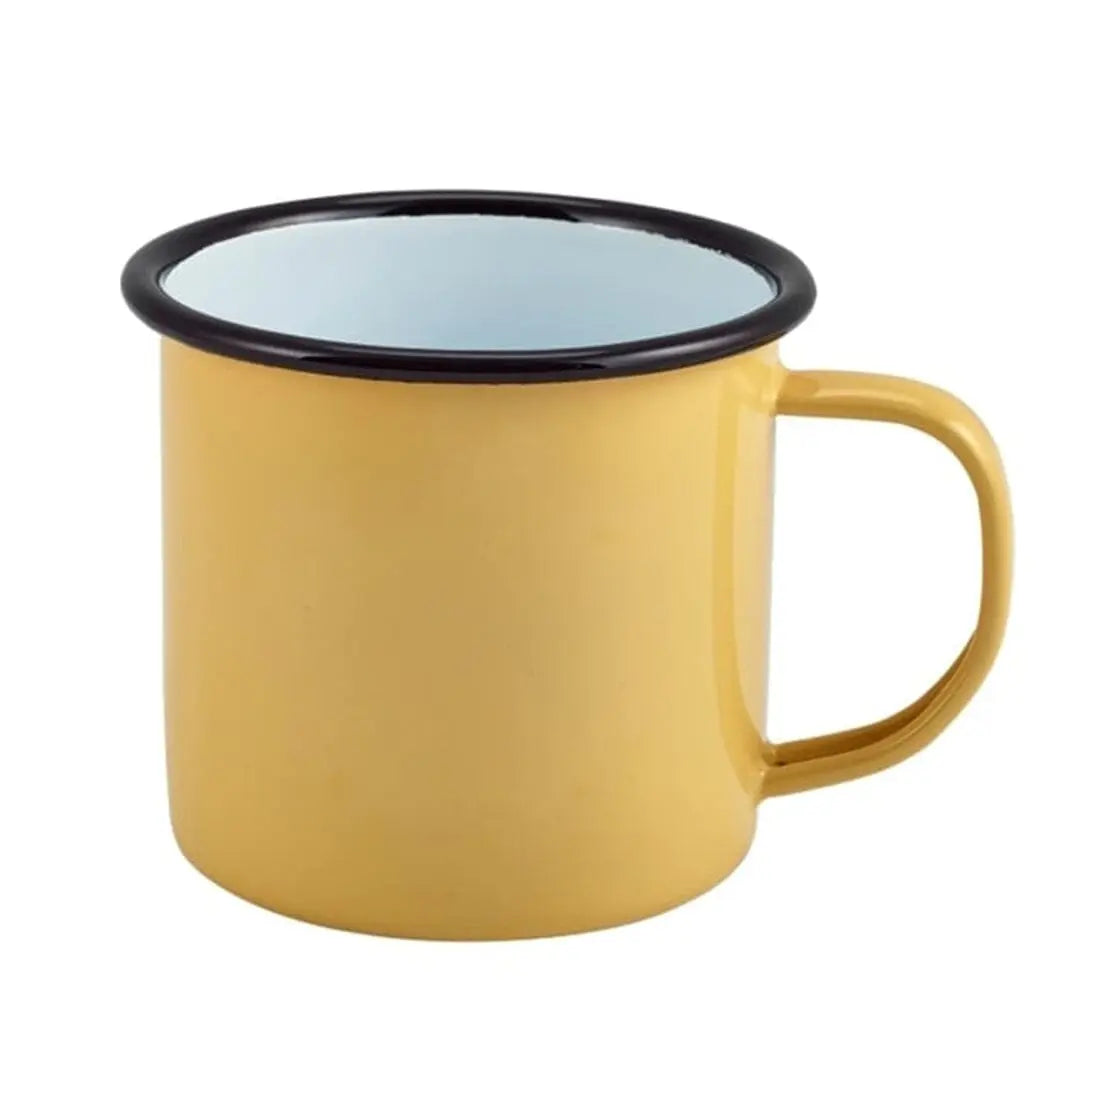 Personalised Coffee Enamel Mug - Duncan Stewart 1978 Enamel-Mug-Yellow-with-Black-Rim Duncan Stewart 1978